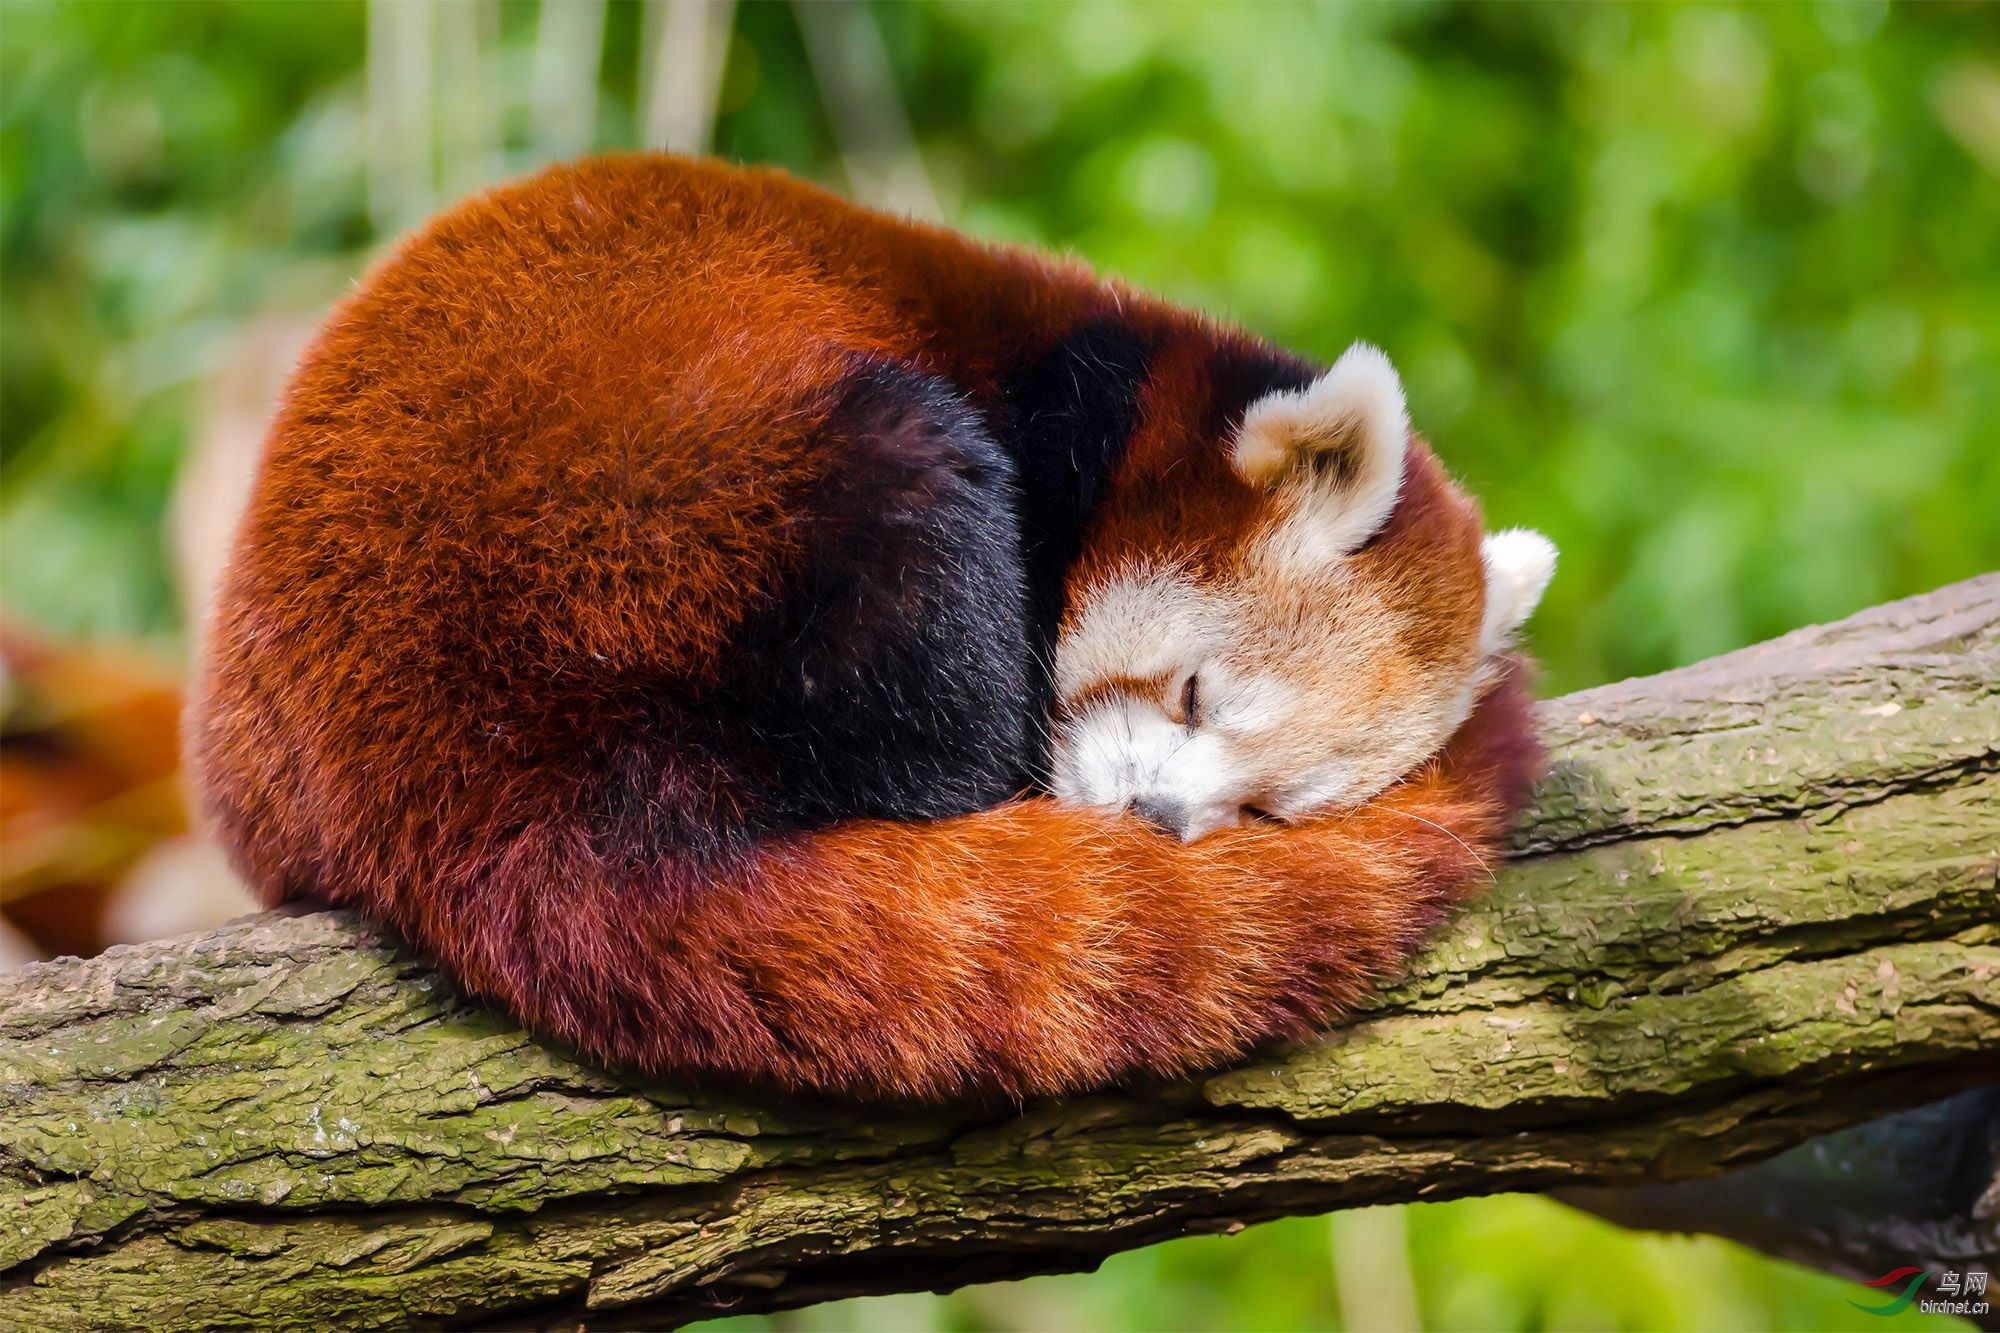 可爱的小熊猫睡态可掬